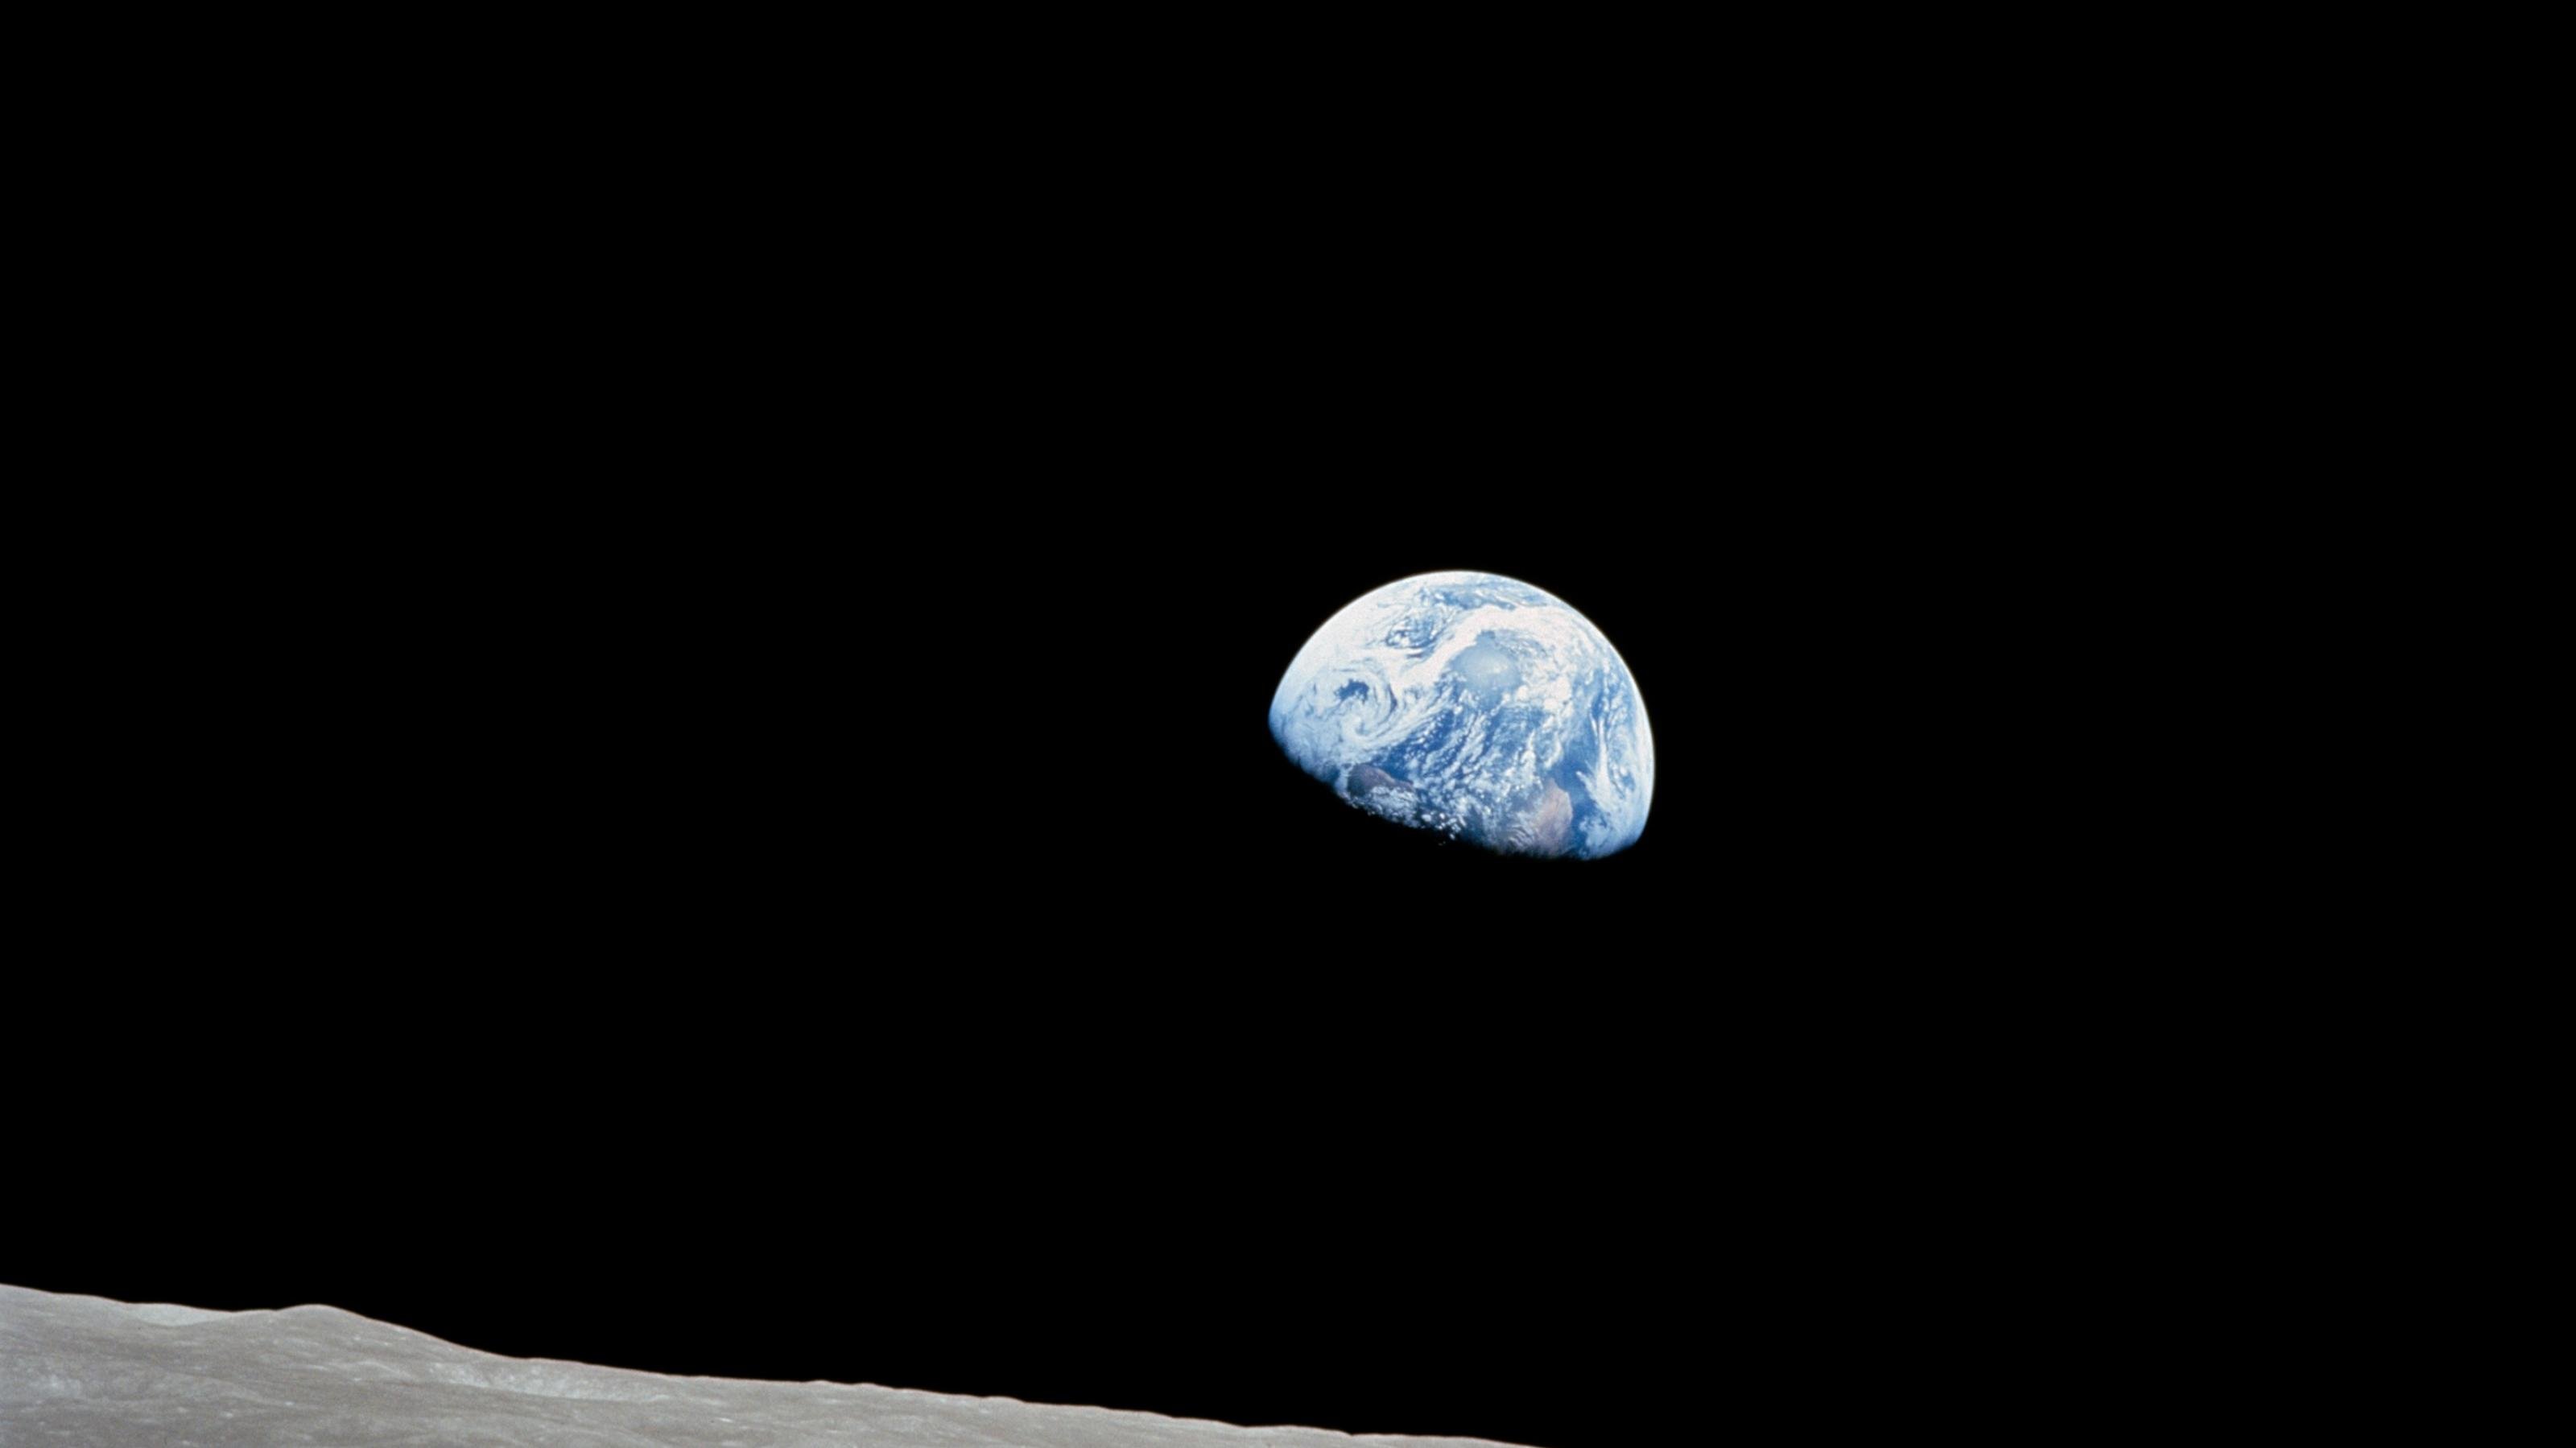 Die Erde gesehen vom Mond, fotografiert von den Apollo-8 Astronauten.